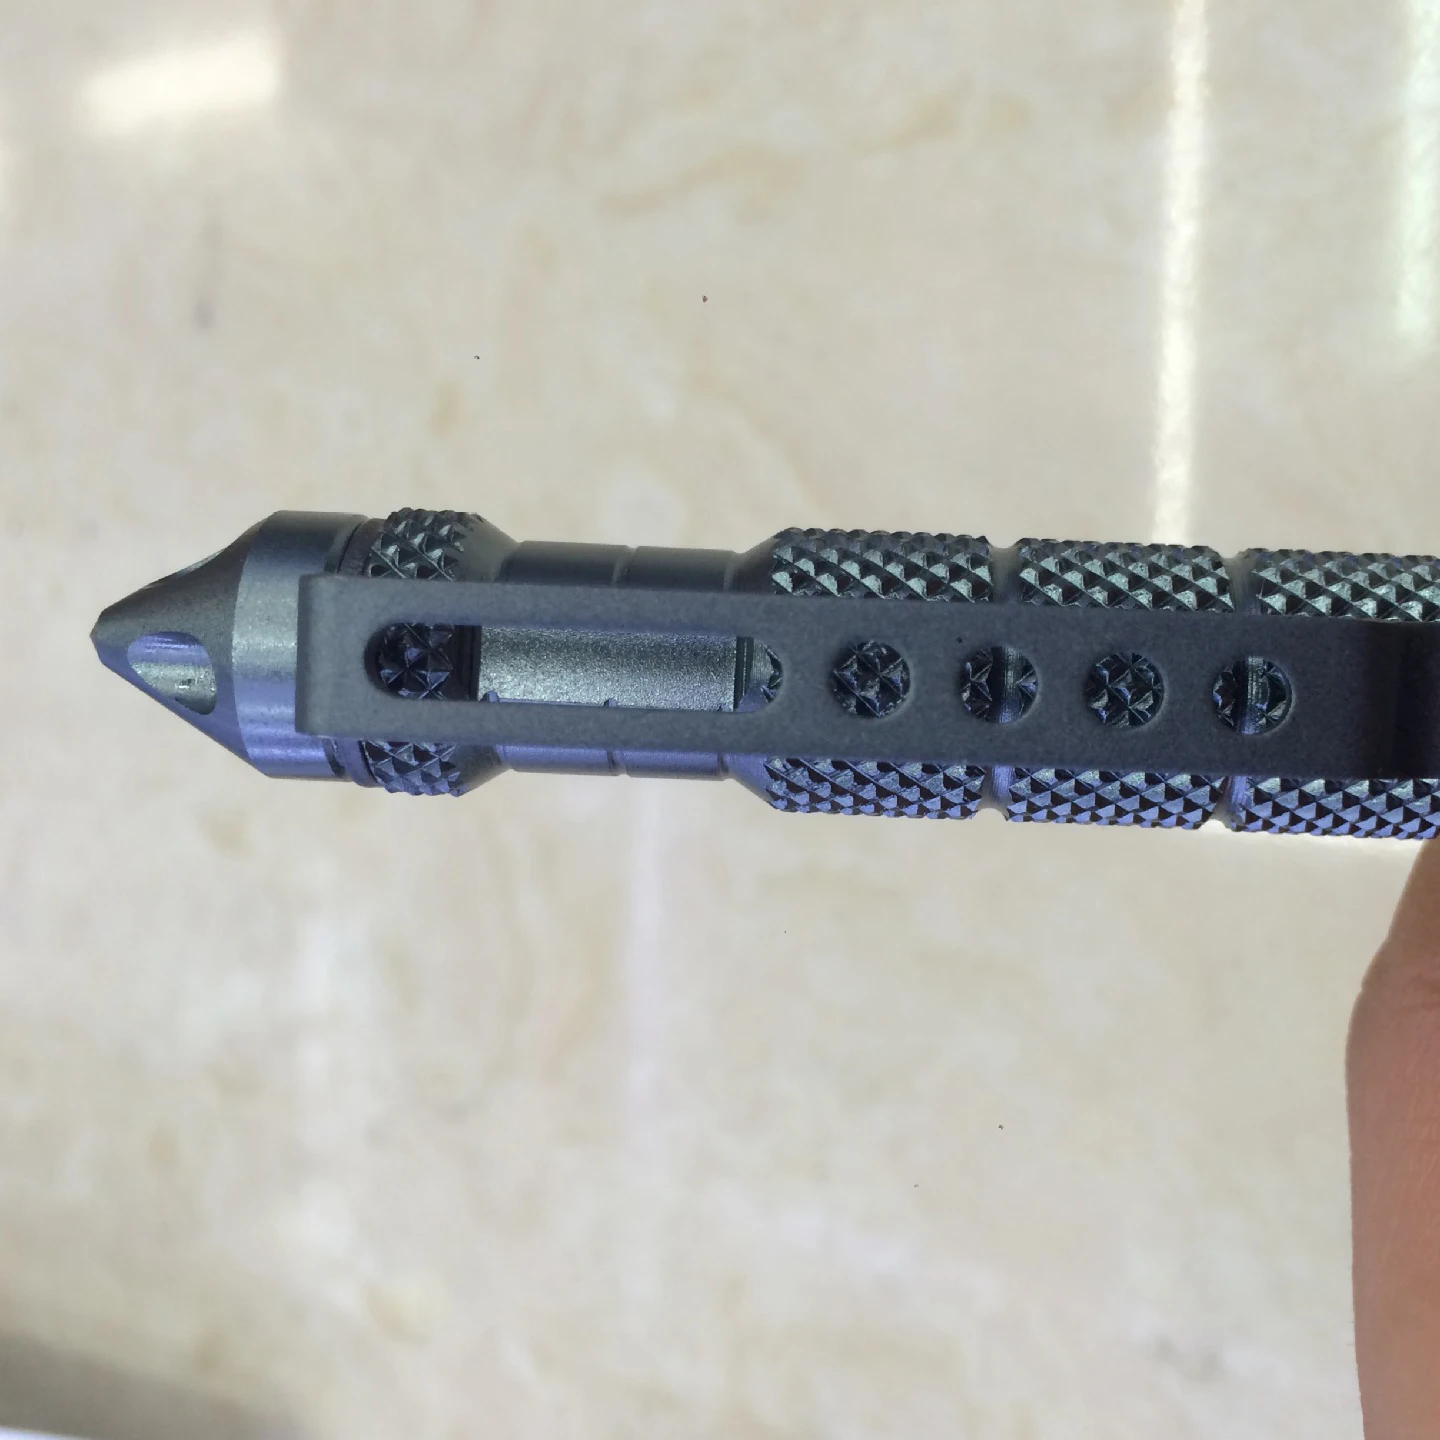 Высокое качество защита персональная тактическая ручка Самозащита Ручка инструмент многоцелевой авиационный алюминиевый